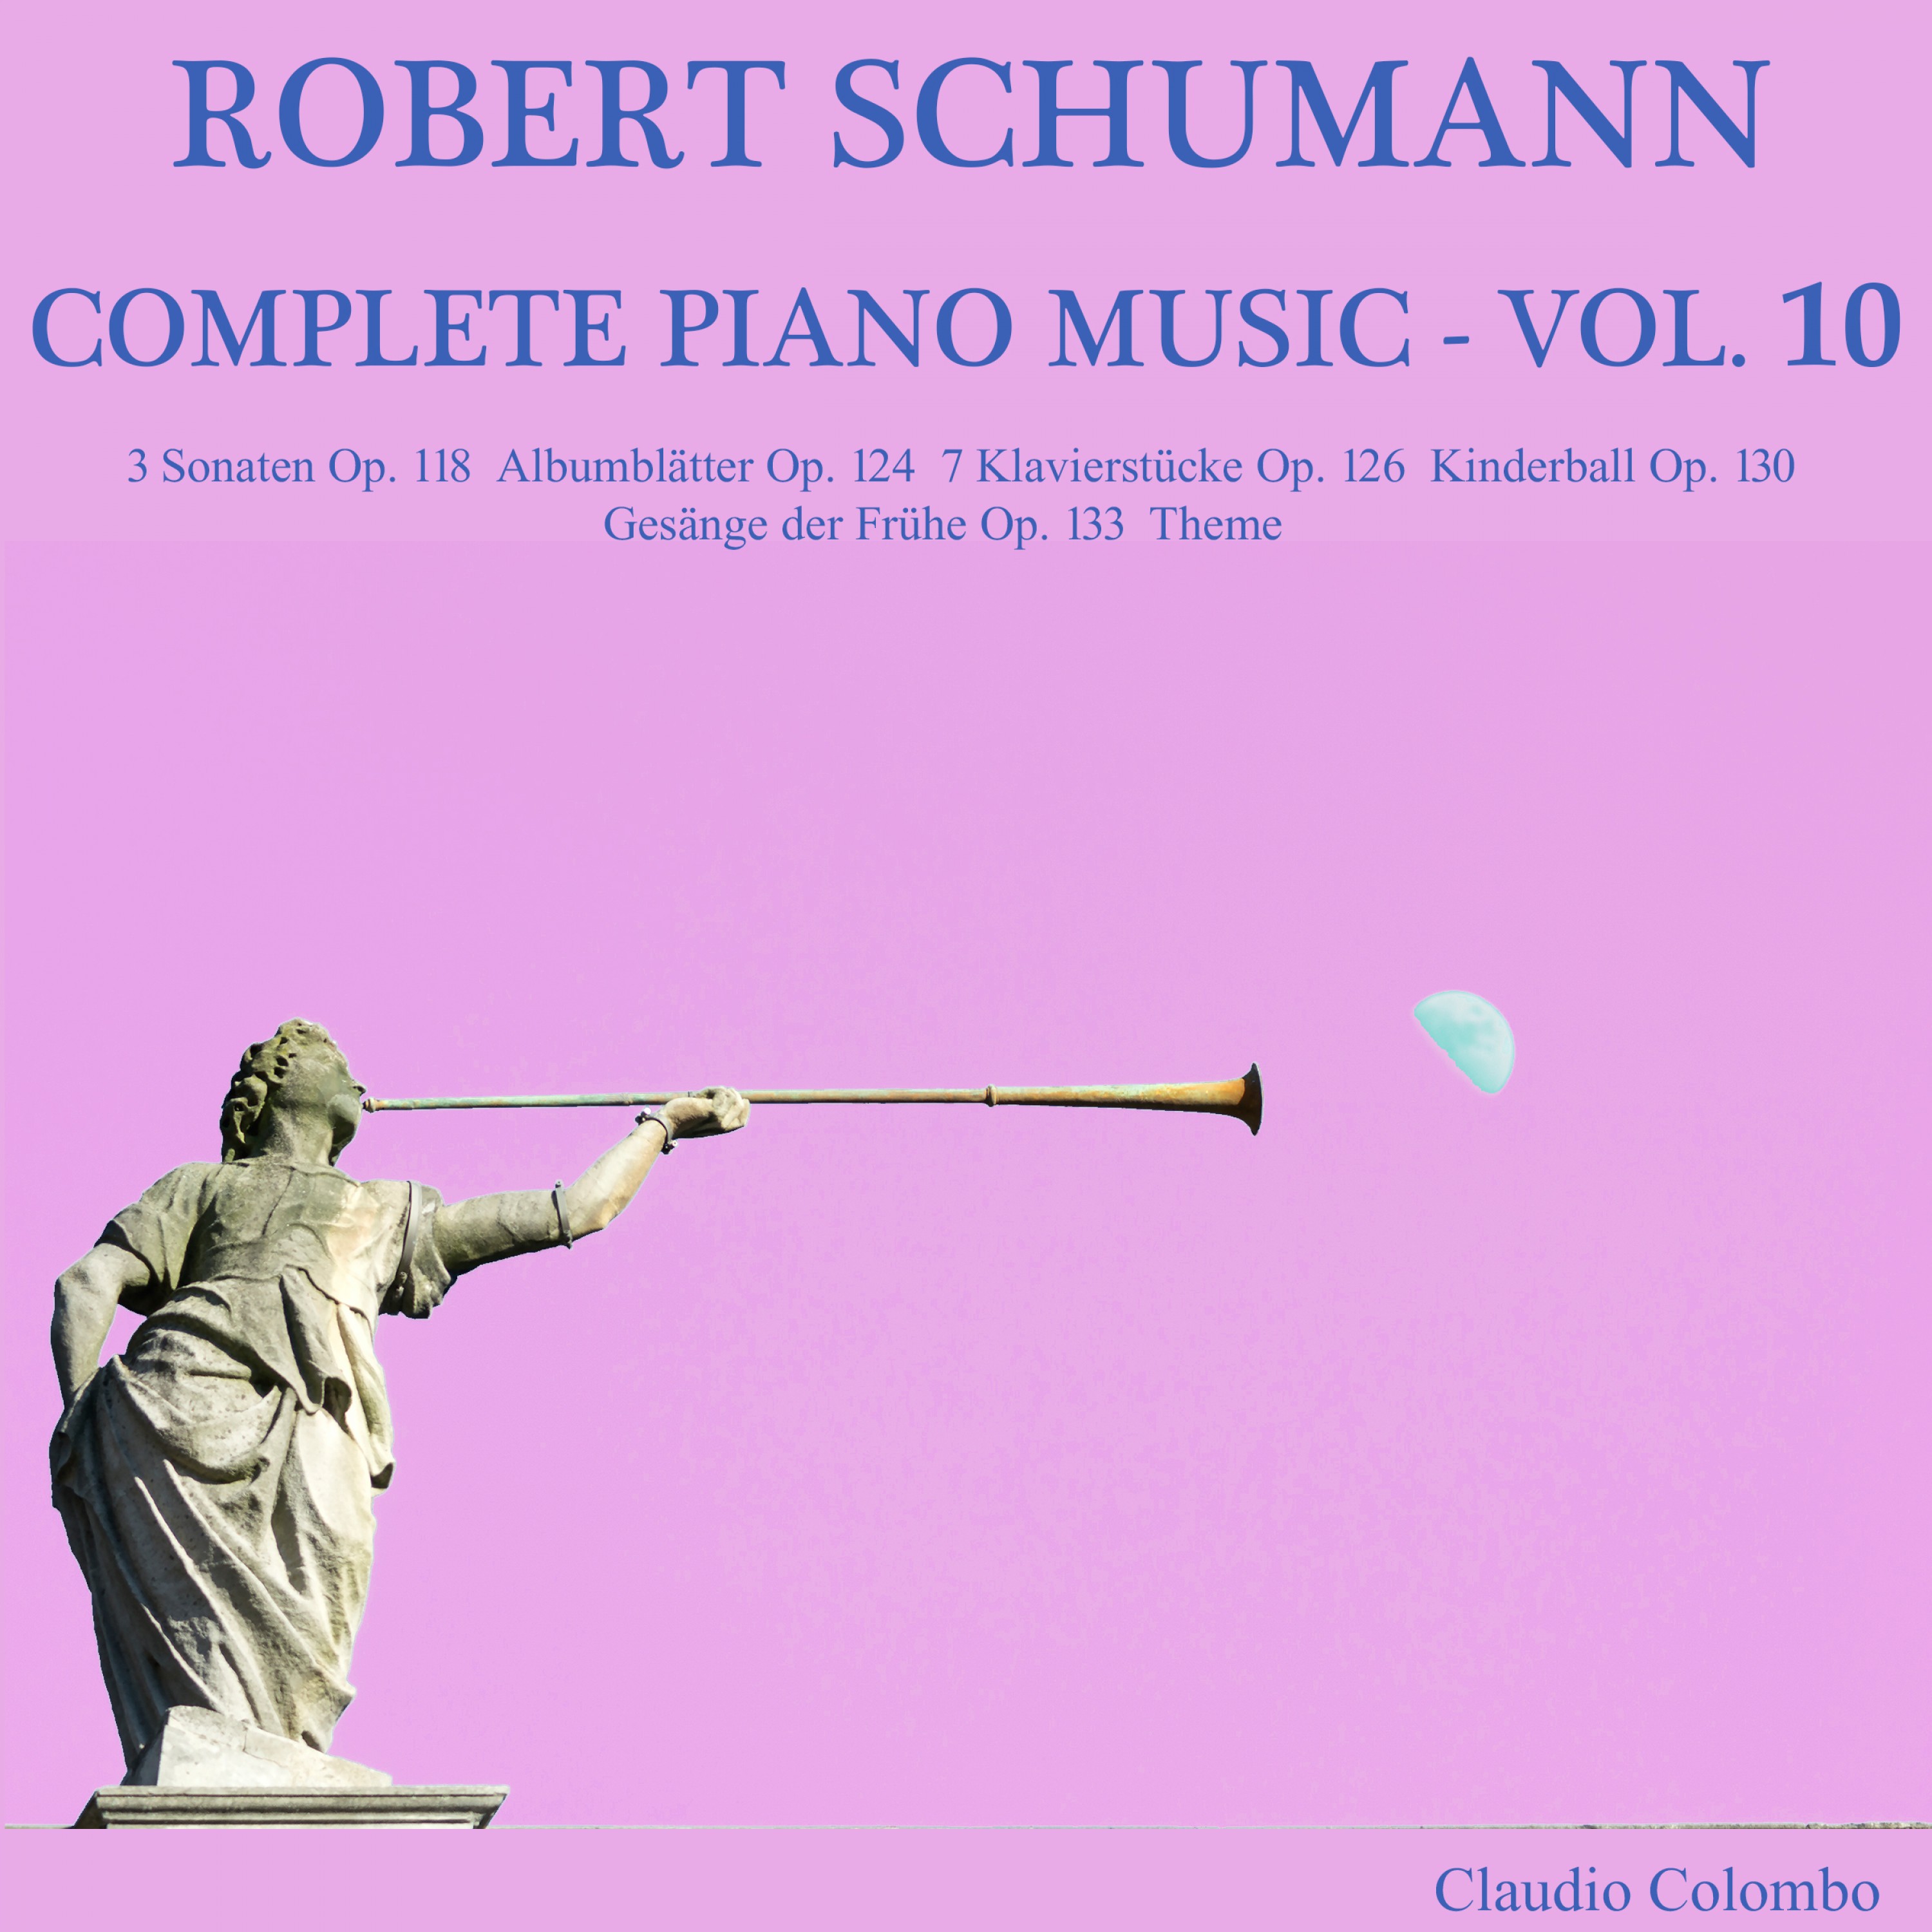 Robert Schumann: Complete Piano Music, Vol. 10